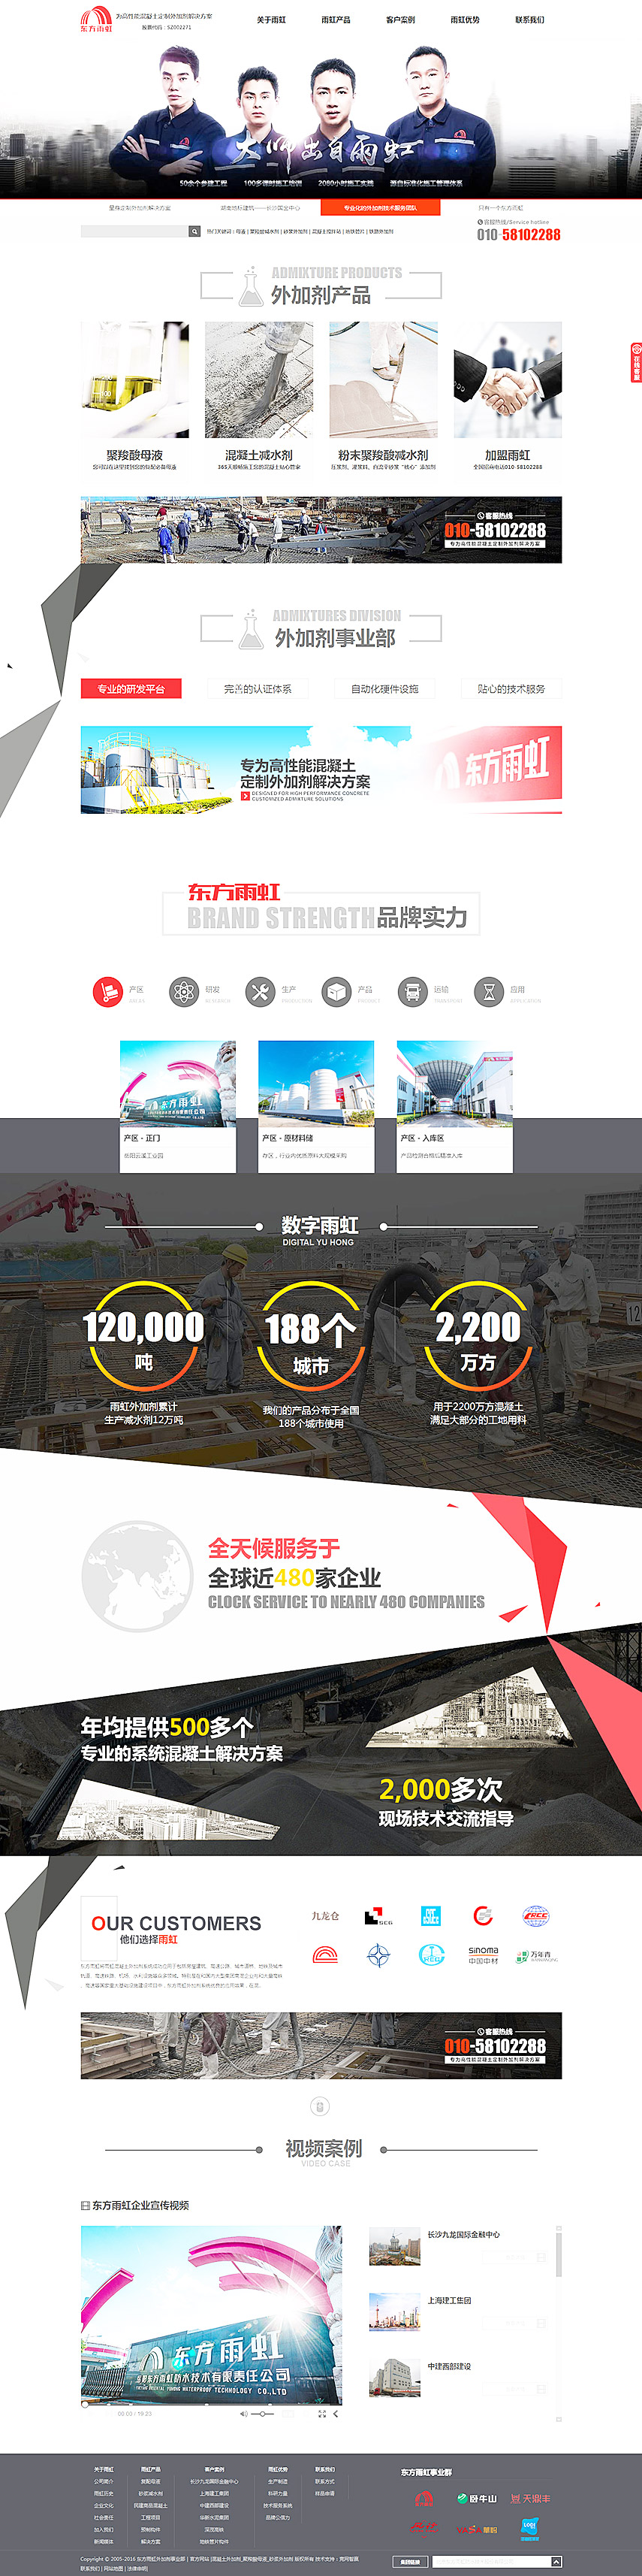 营销网站成功案例-岳阳东方雨虹防水技术有限责任公司